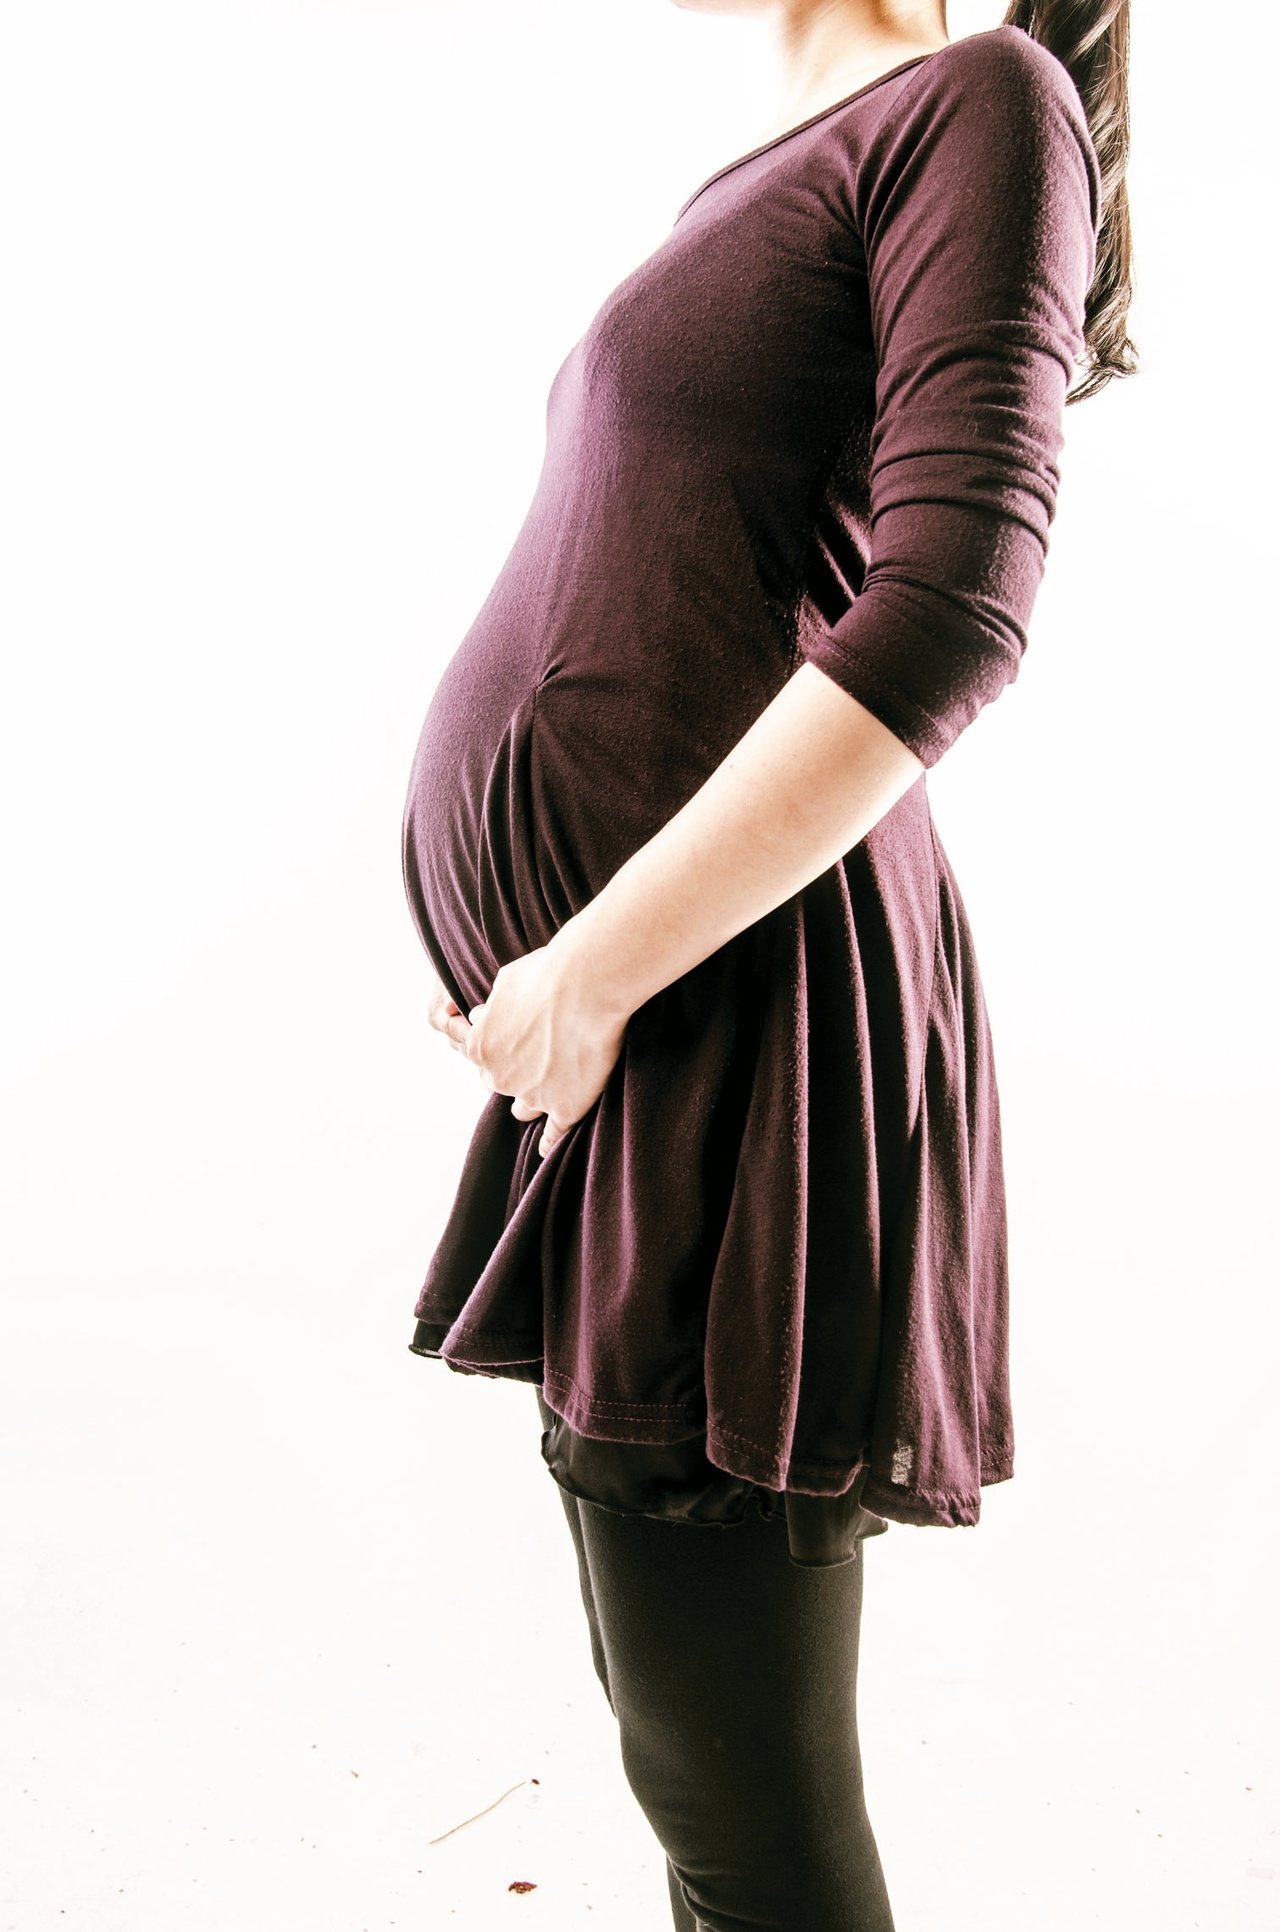 懷孕婦女的骨質流失速度驚人，尤其晚生育的婦女更要注意補鈣。